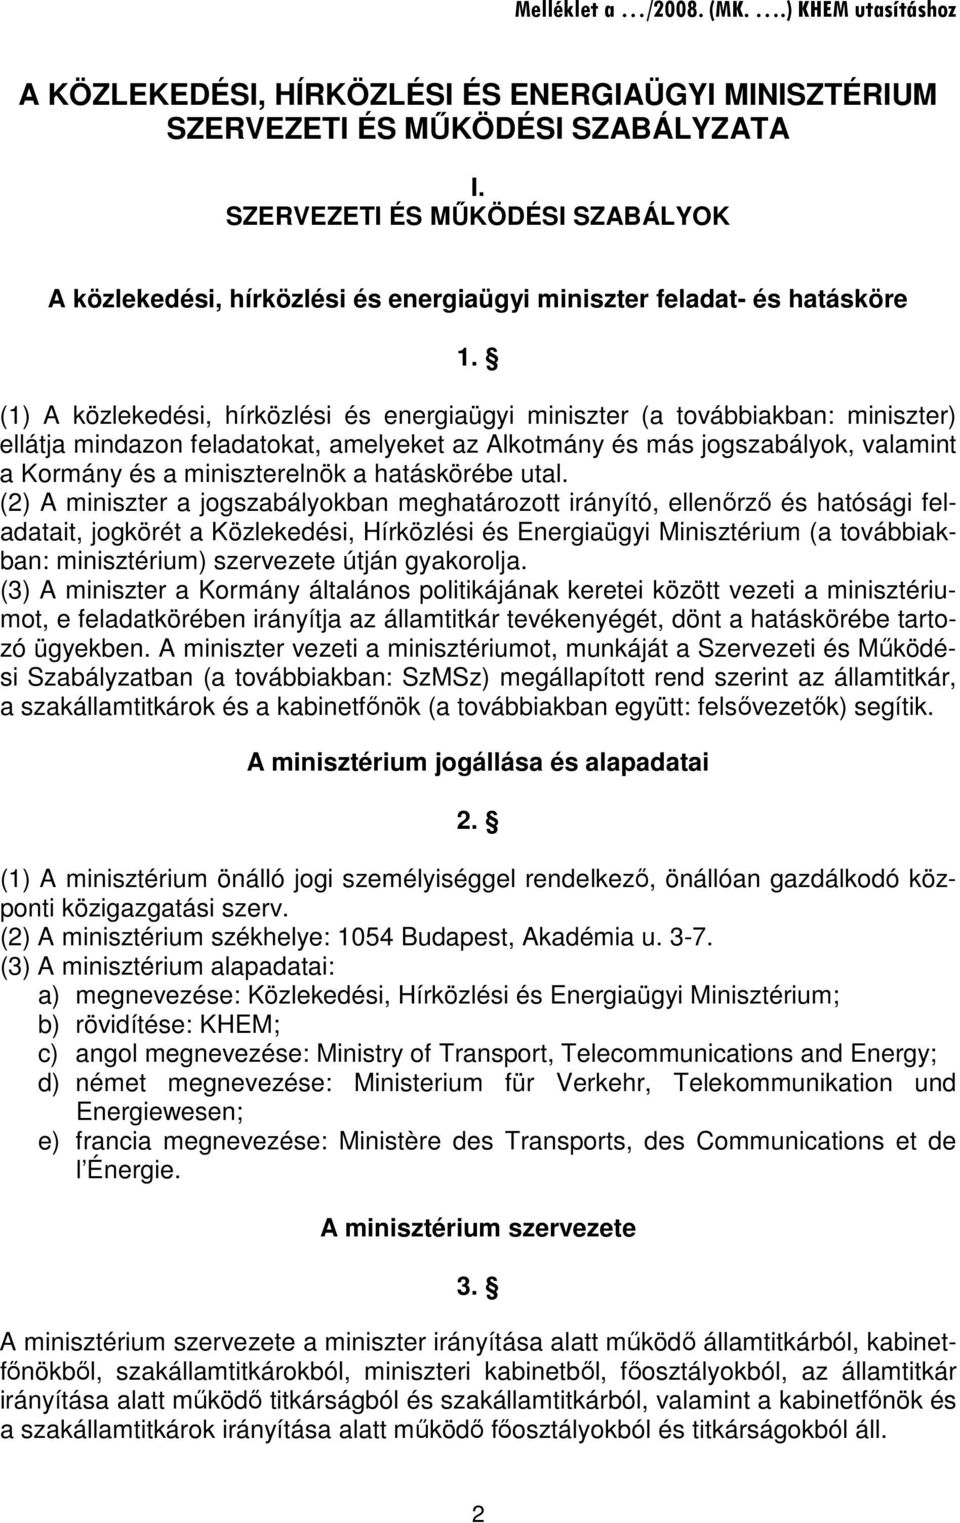 (1) A közlekedési, hírközlési és energiaügyi miniszter (a továbbiakban: miniszter) ellátja mindazon feladatokat, amelyeket az Alkotmány és más jogszabályok, valamint a Kormány és a miniszterelnök a